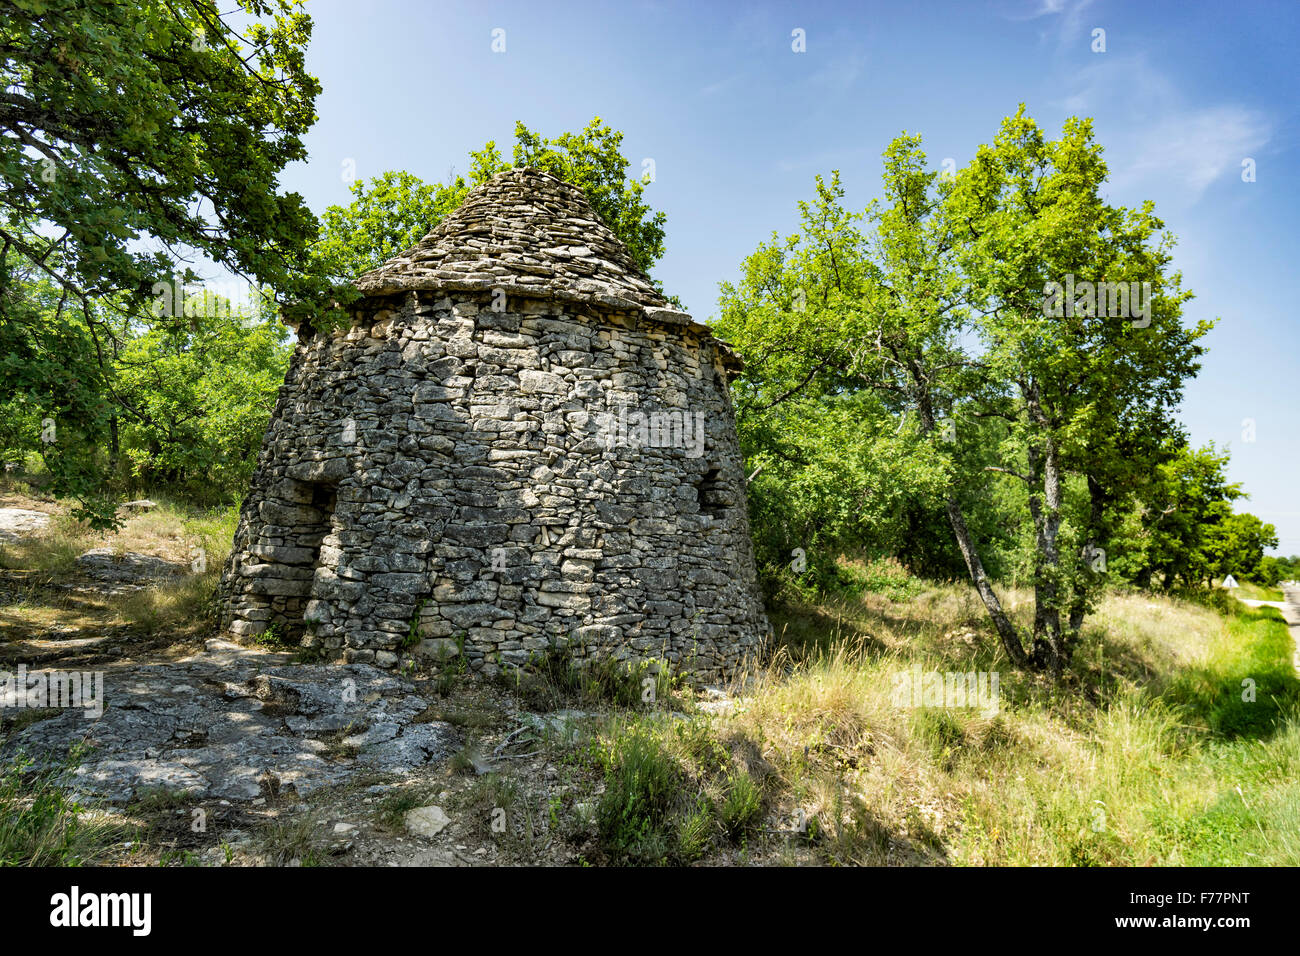 Bories, cabane en pierre, Luberon, Provence, Alpes Maritime, France Banque D'Images